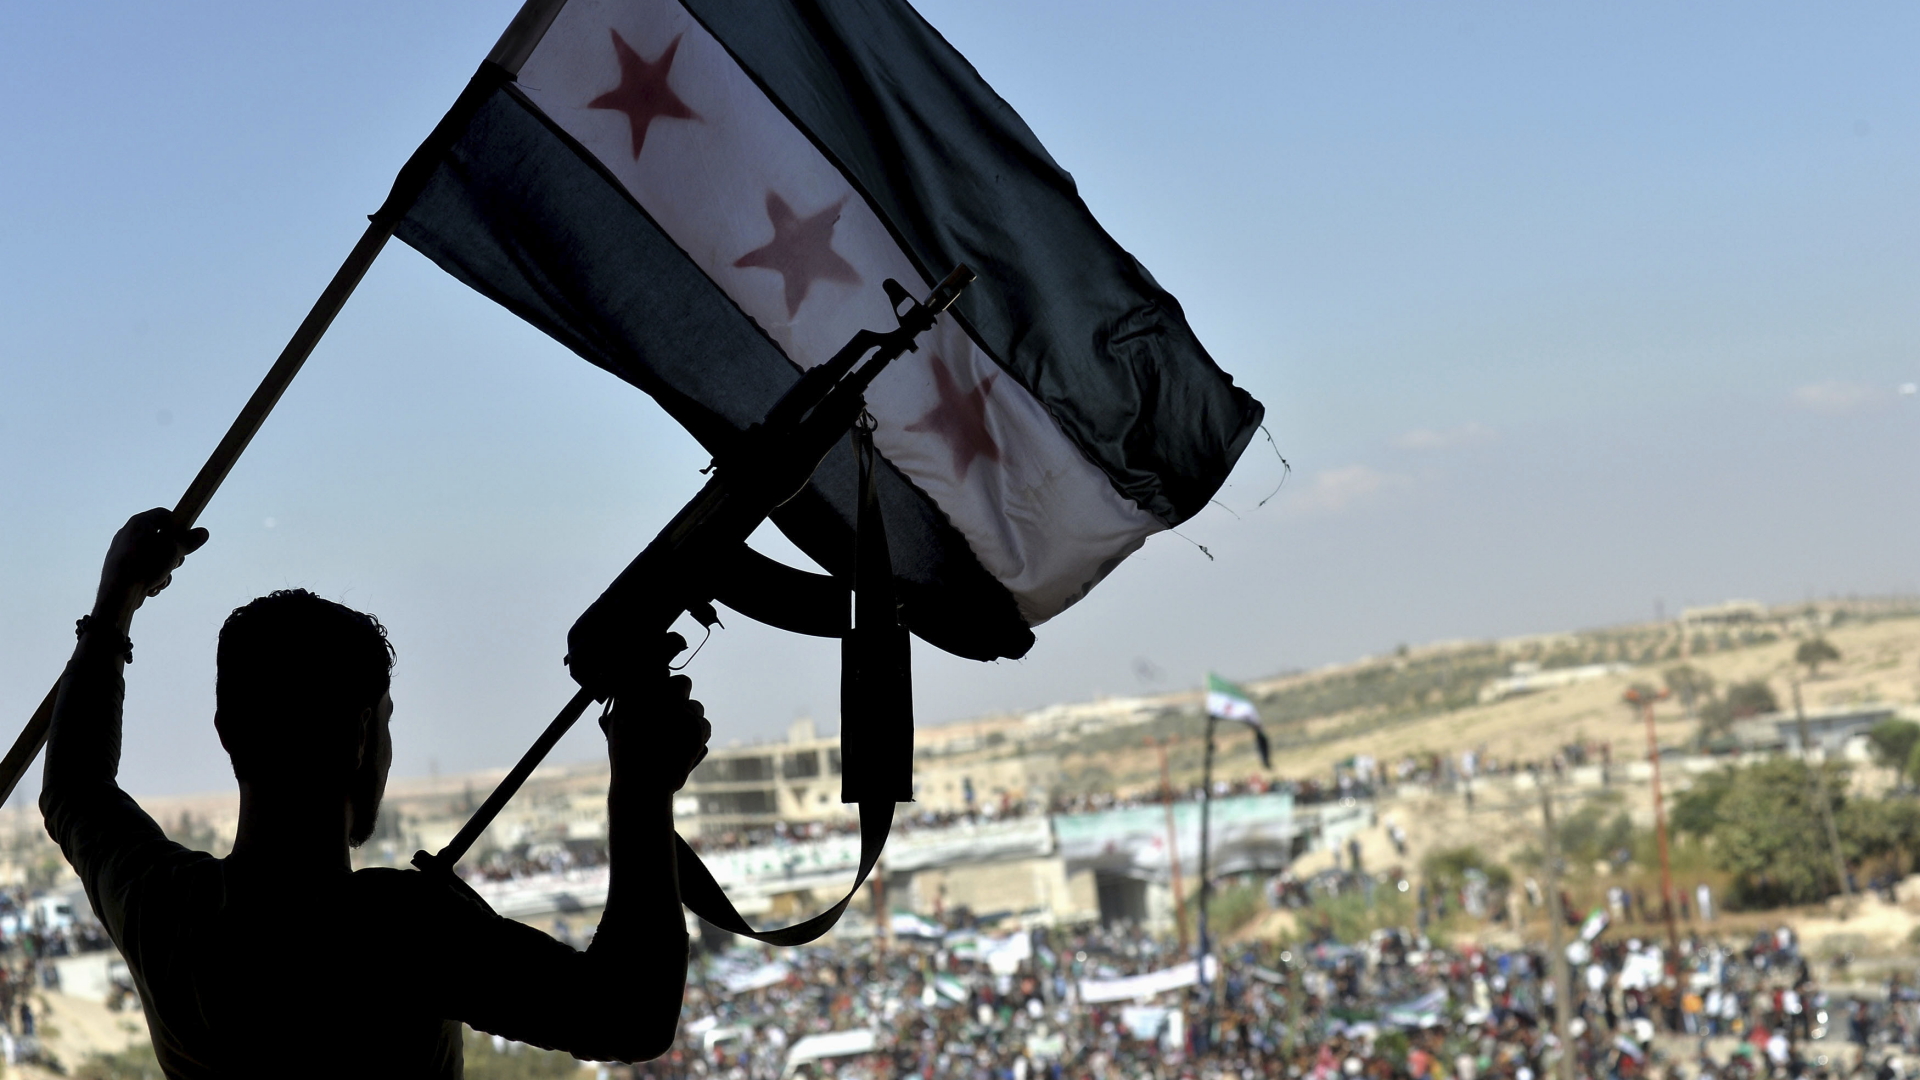 Ein Demonstrant schwenkt eine syrische Fahne und hält ein Gewehr hoch bei einem Protest gegen die Offensive der syrischen Regierung in der Provinz Idlib. | Bildquelle: dpa